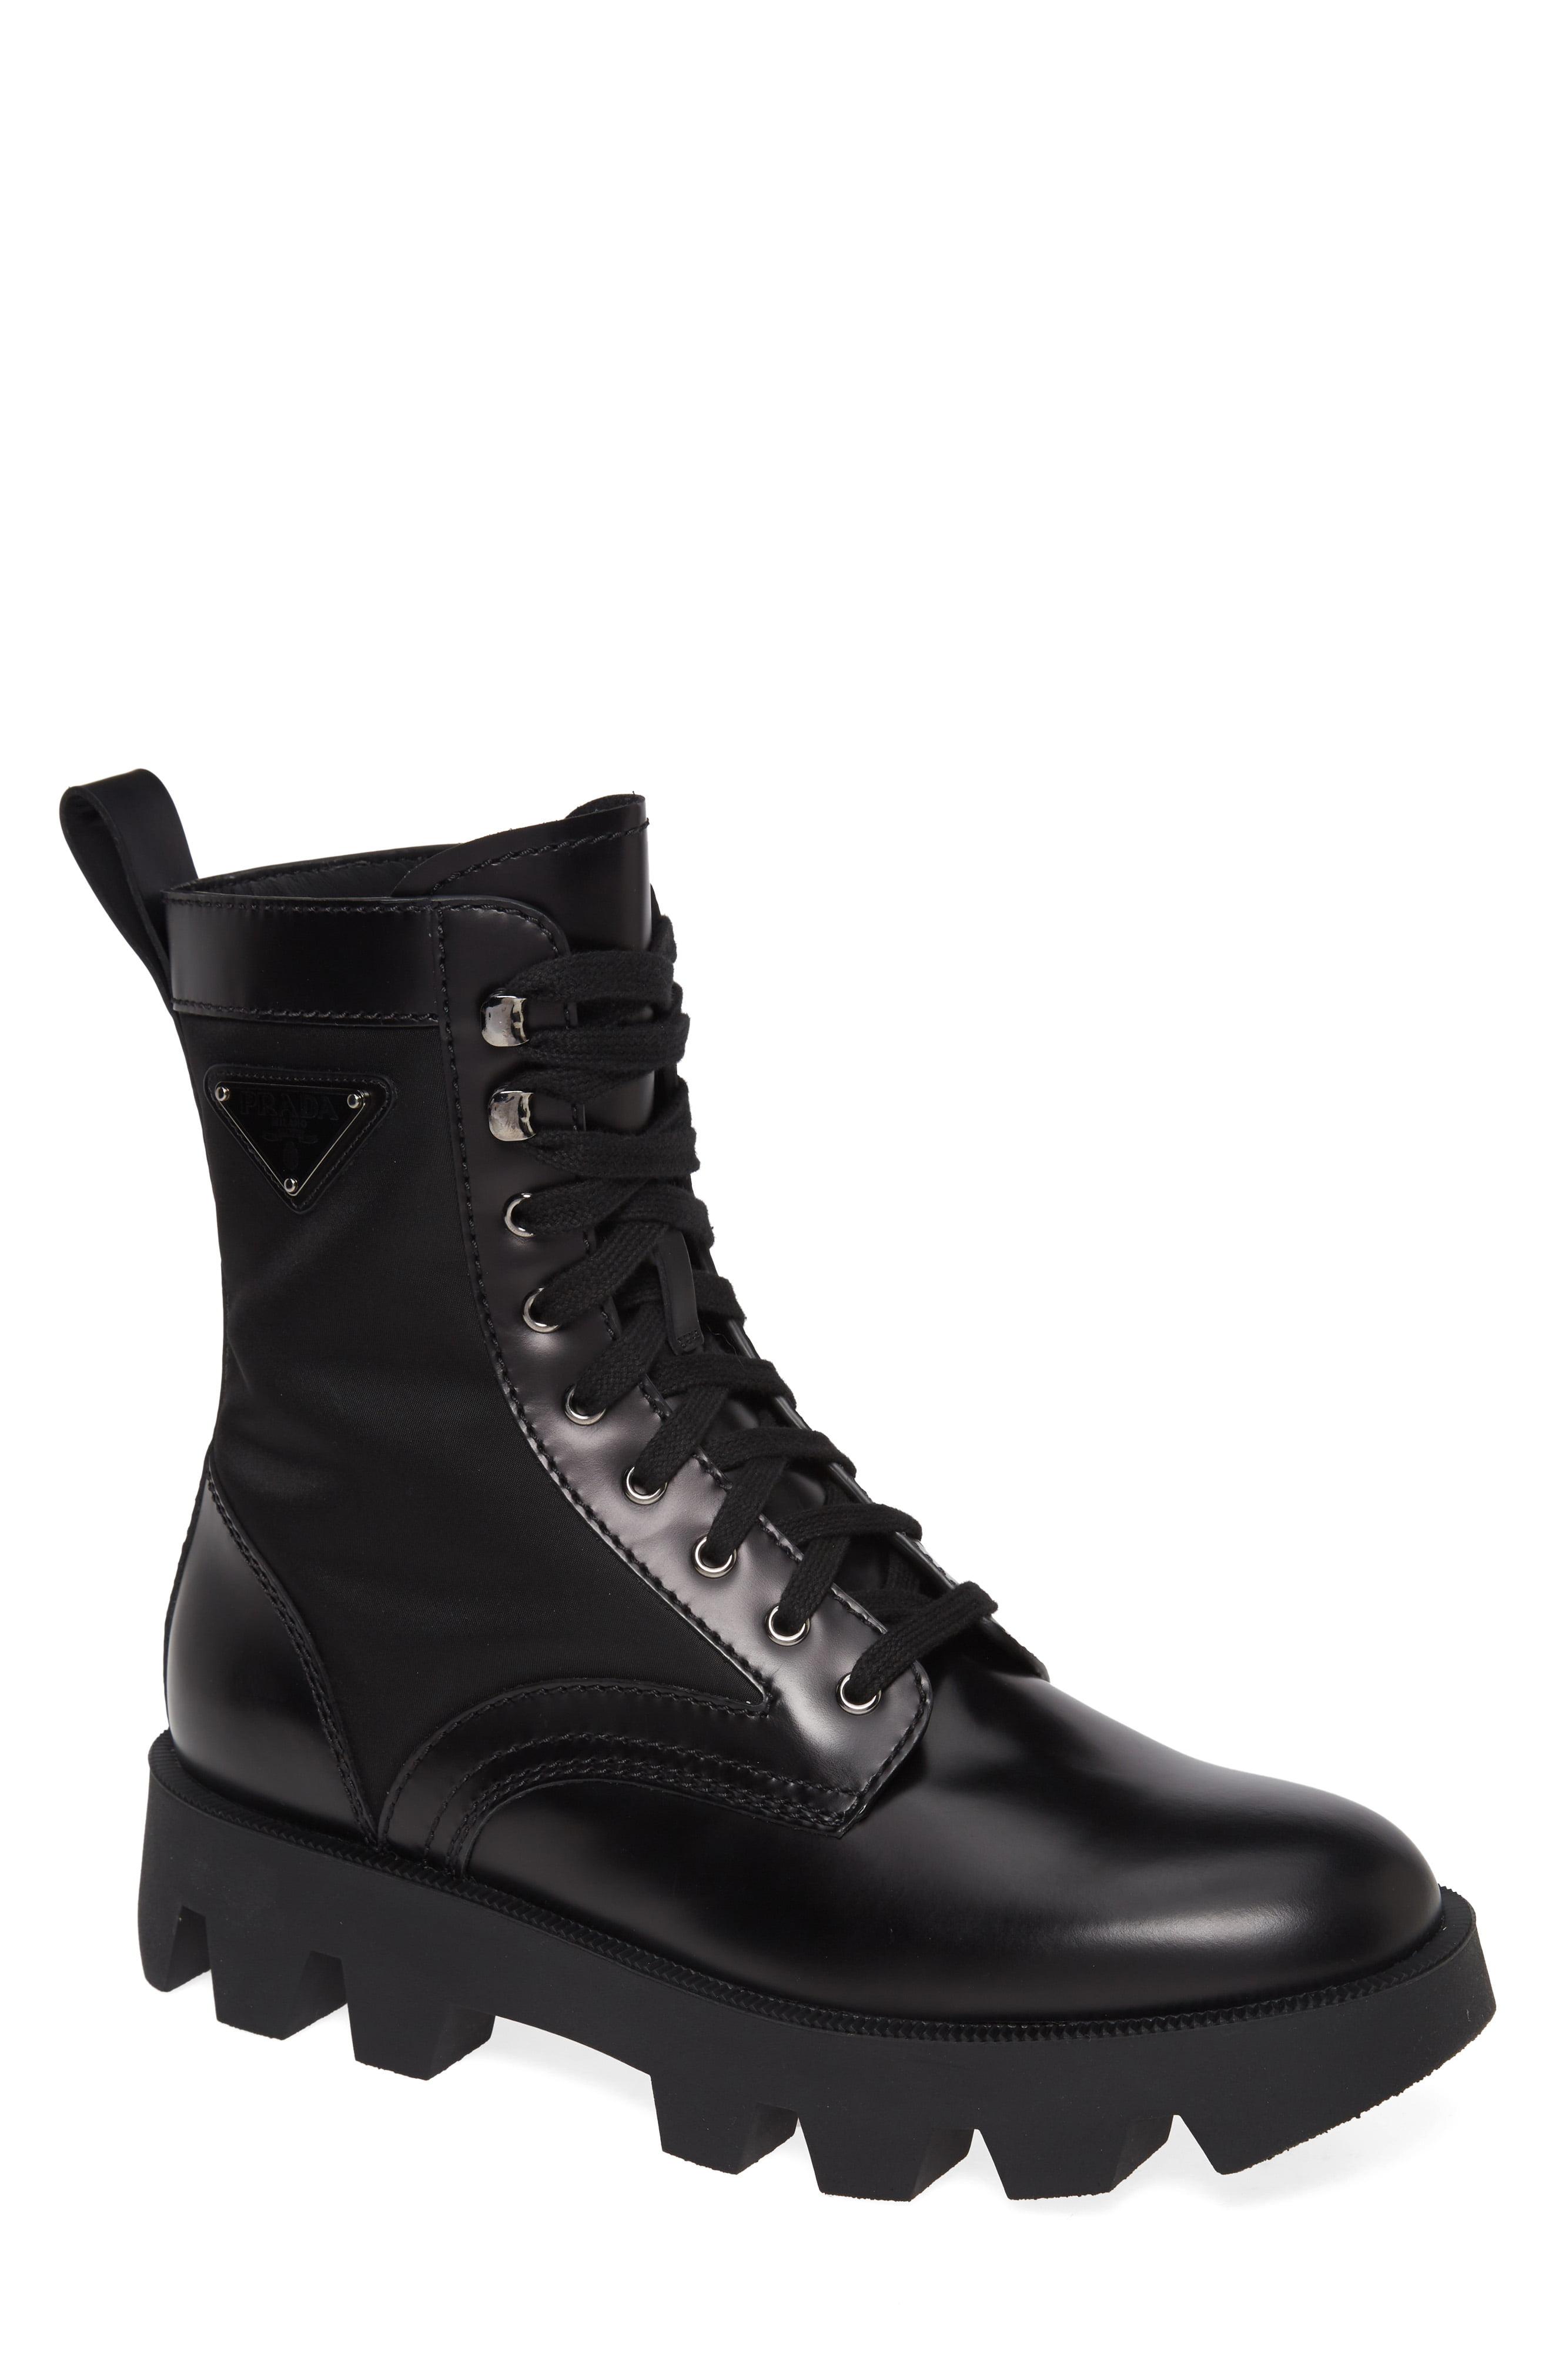 Prada Leather Logo Combat Boot in Nero (Black) for Men - Lyst